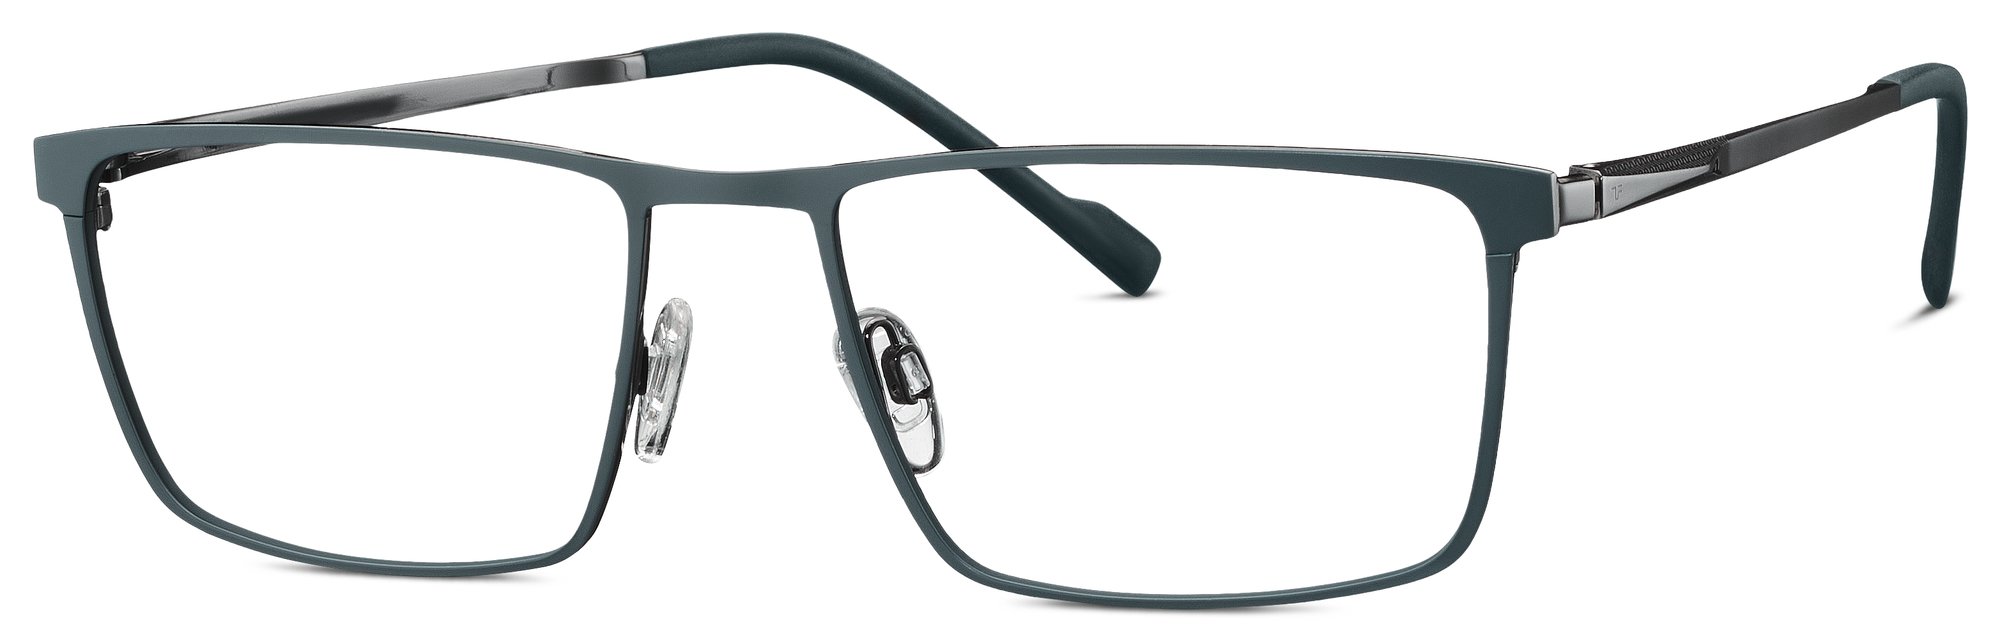 Das Bild zeigt die Korrektionsbrille 820951 73 von der Marke Titanflex in grau.